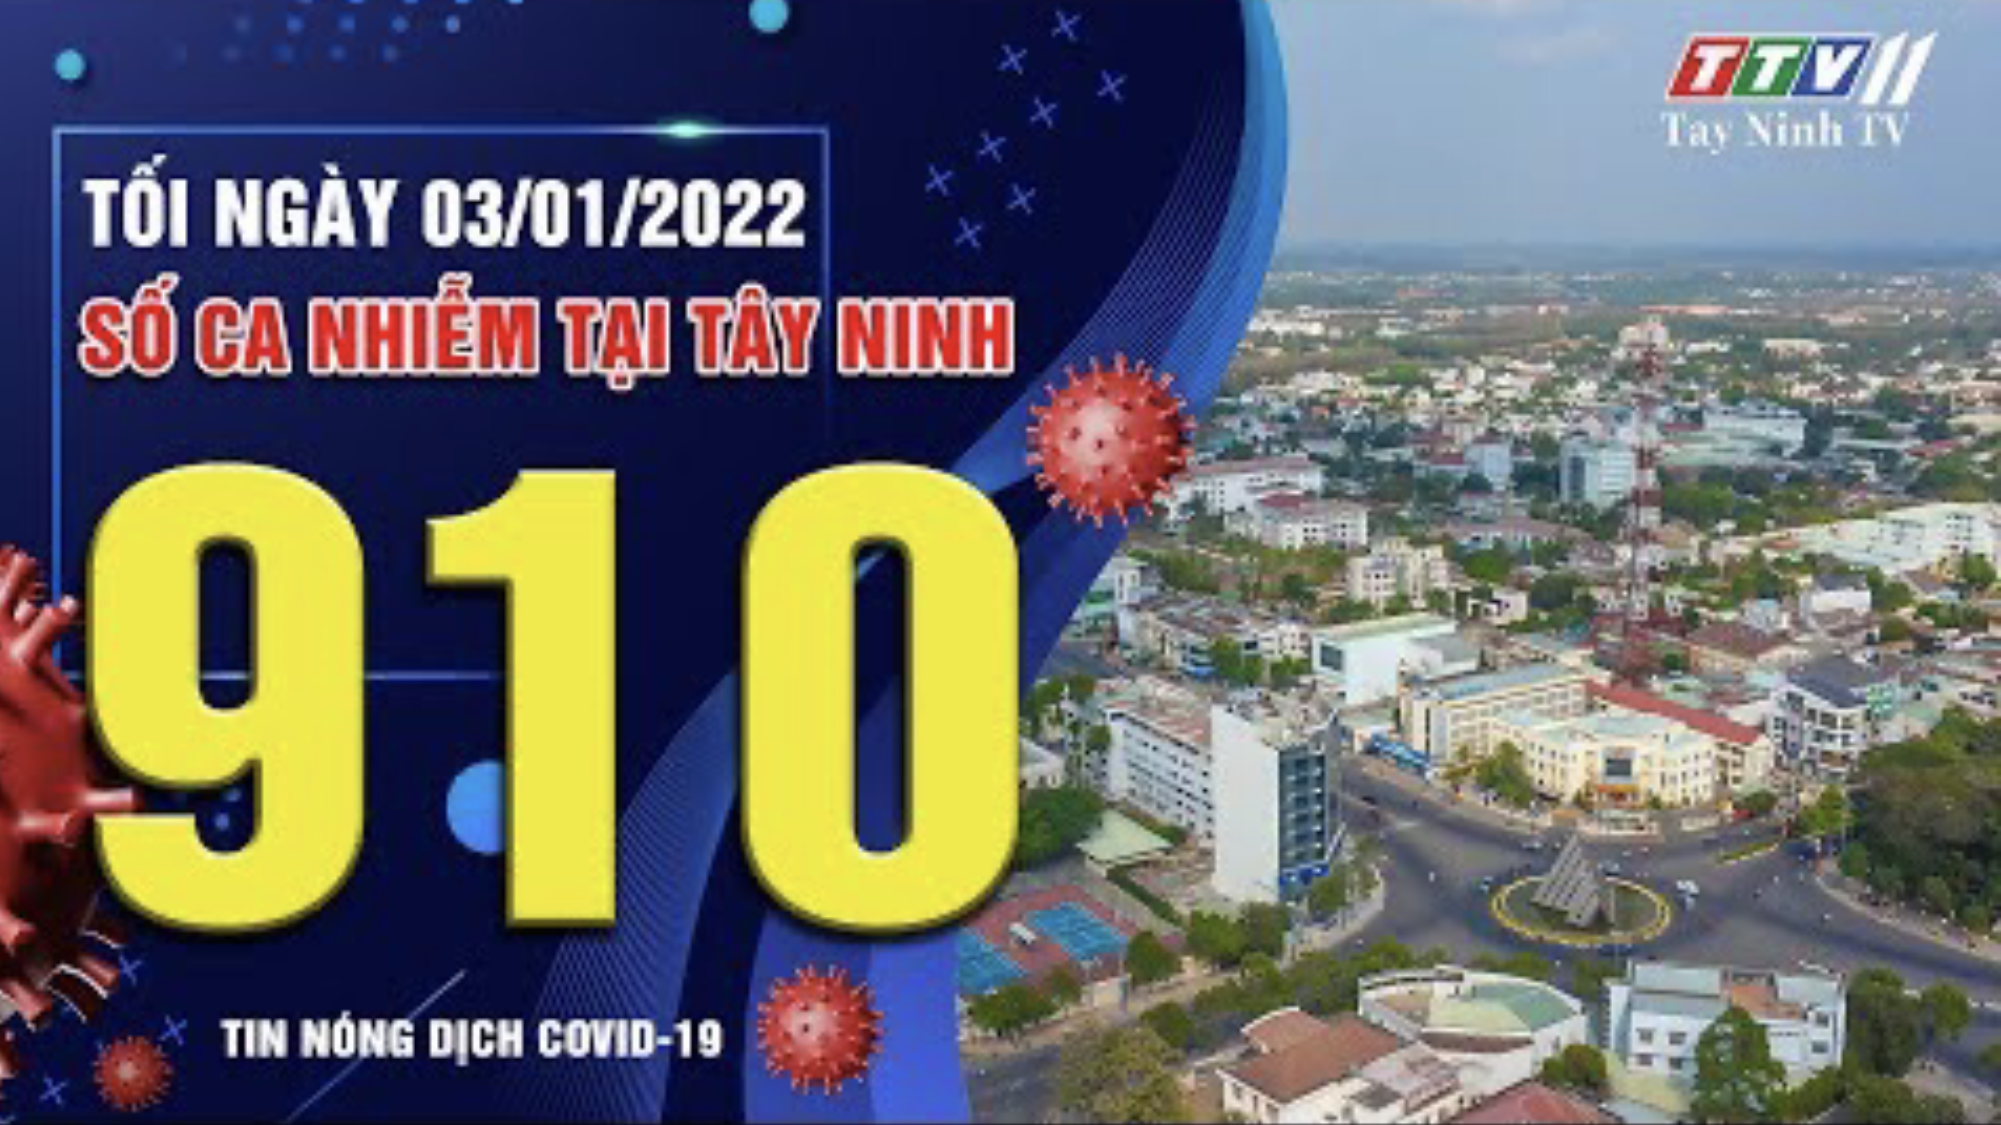 TIN TỨC COVID-19 TỐI 03/01/2022 | Tin tức hôm nay | TayNinhTV